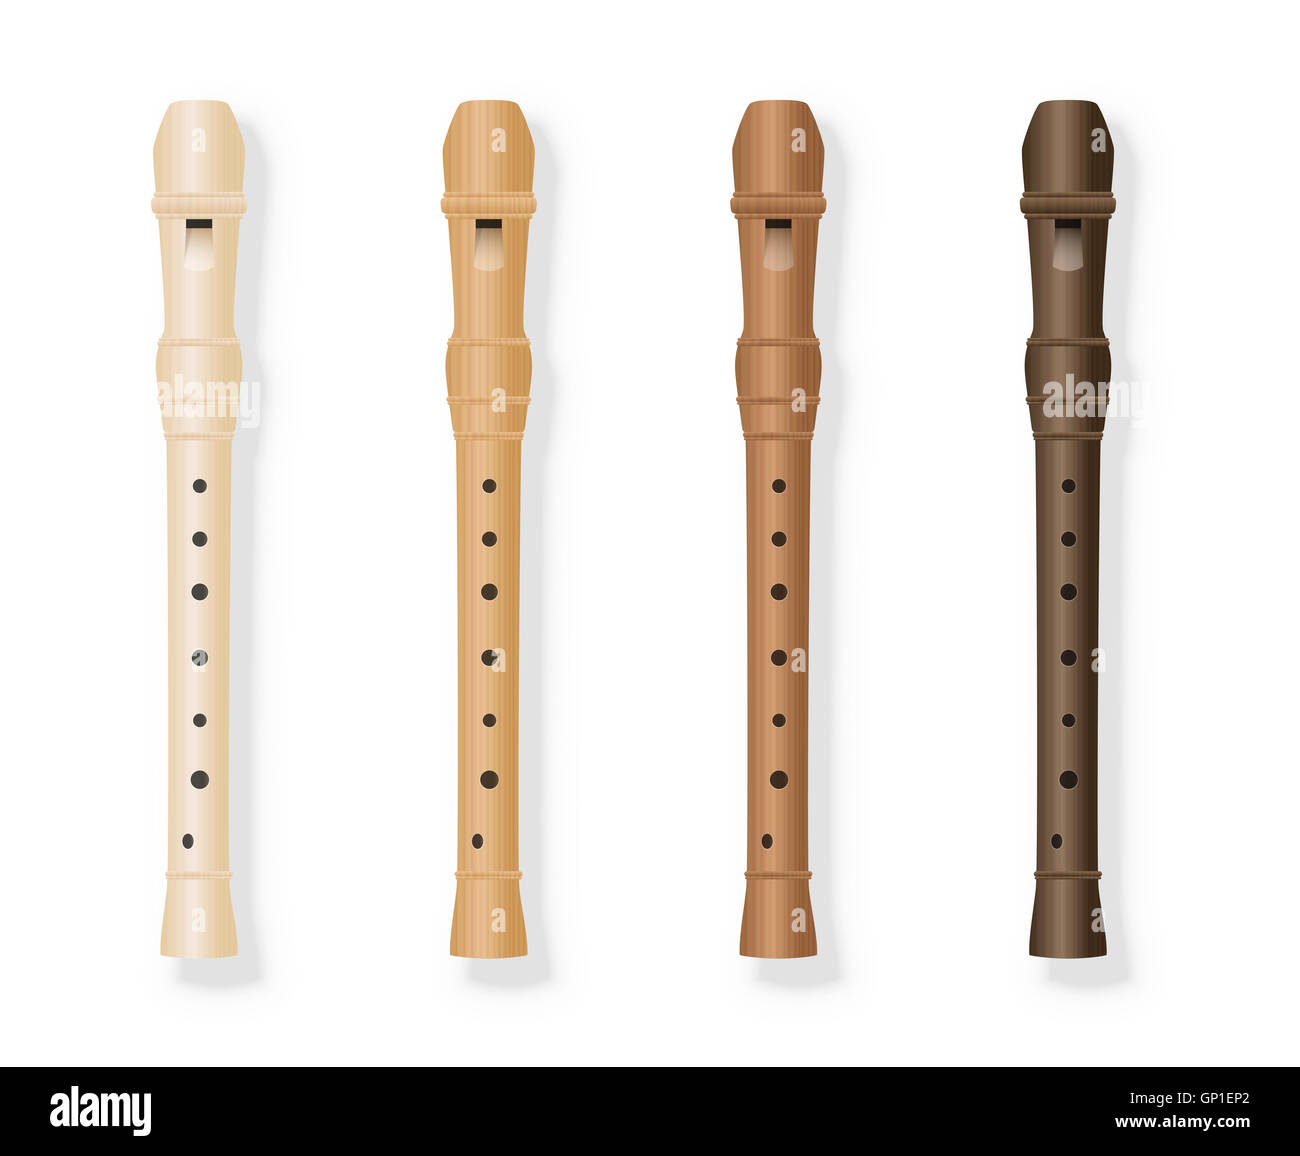 Variazioni di registratore - quattro fipple flauti in vari tipi di legno. Immagine su sfondo bianco. Foto Stock